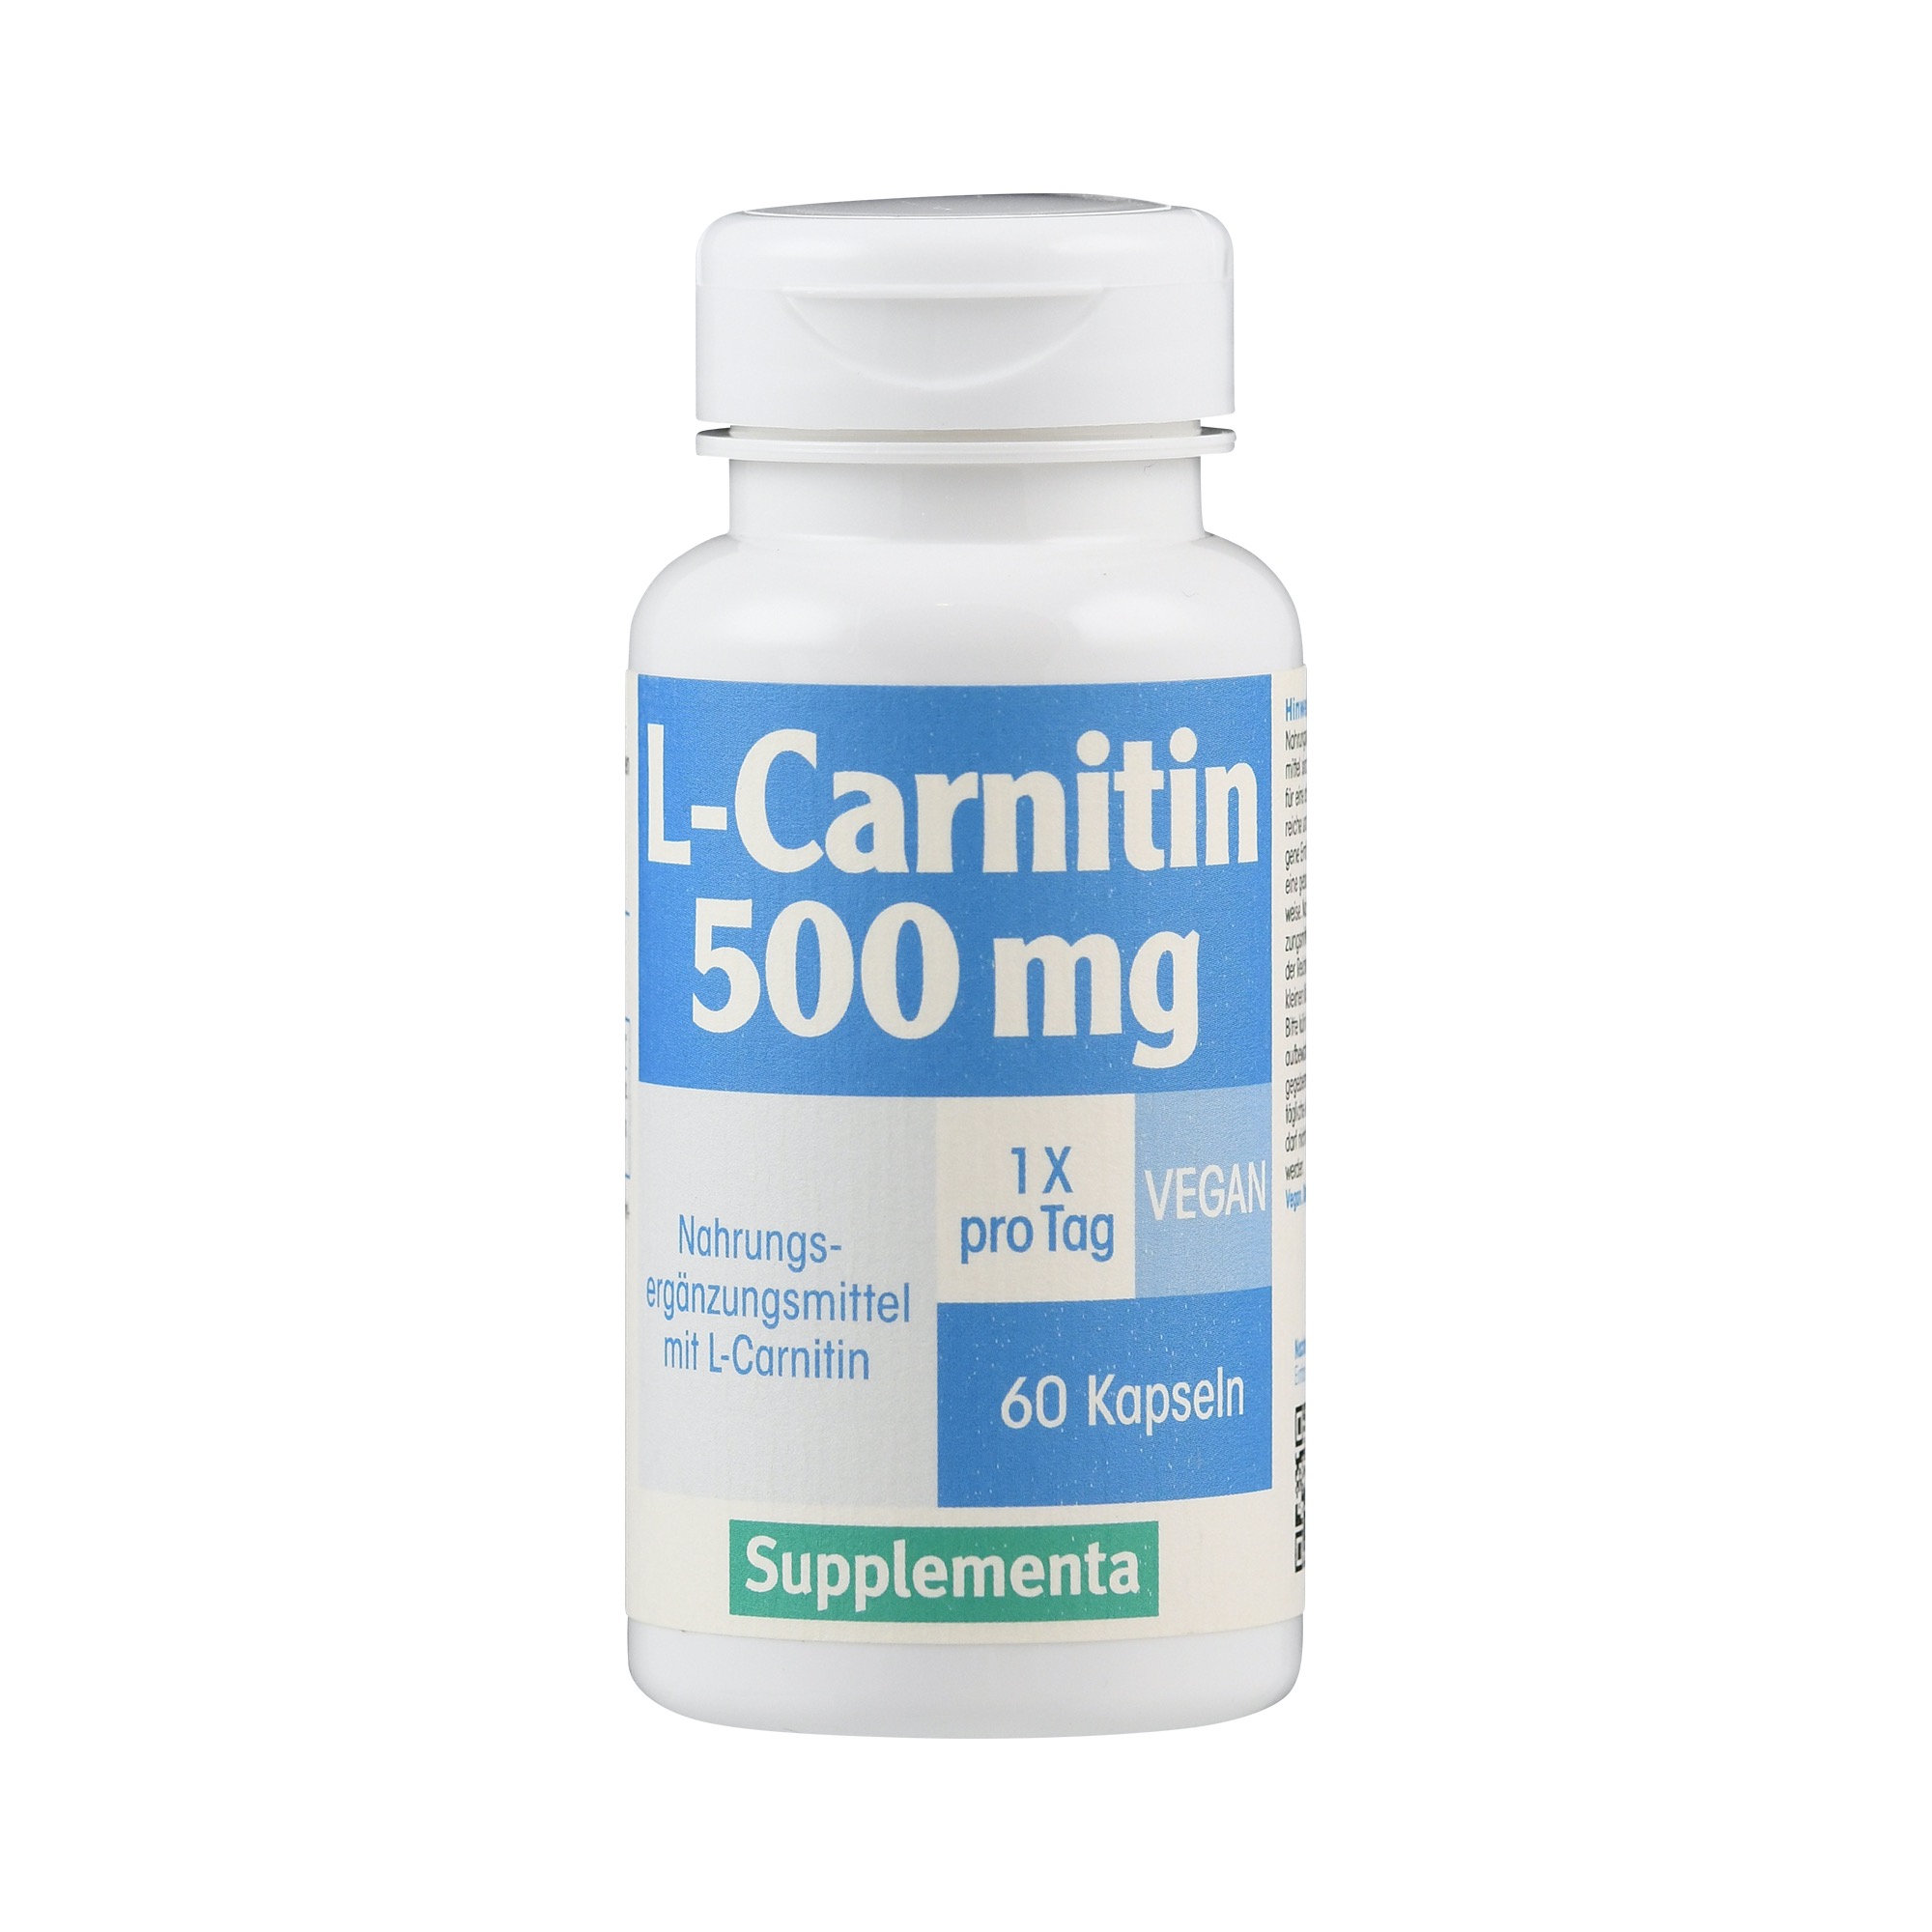 L-Carnitin 500 mg | Supplementa von Supplementa.